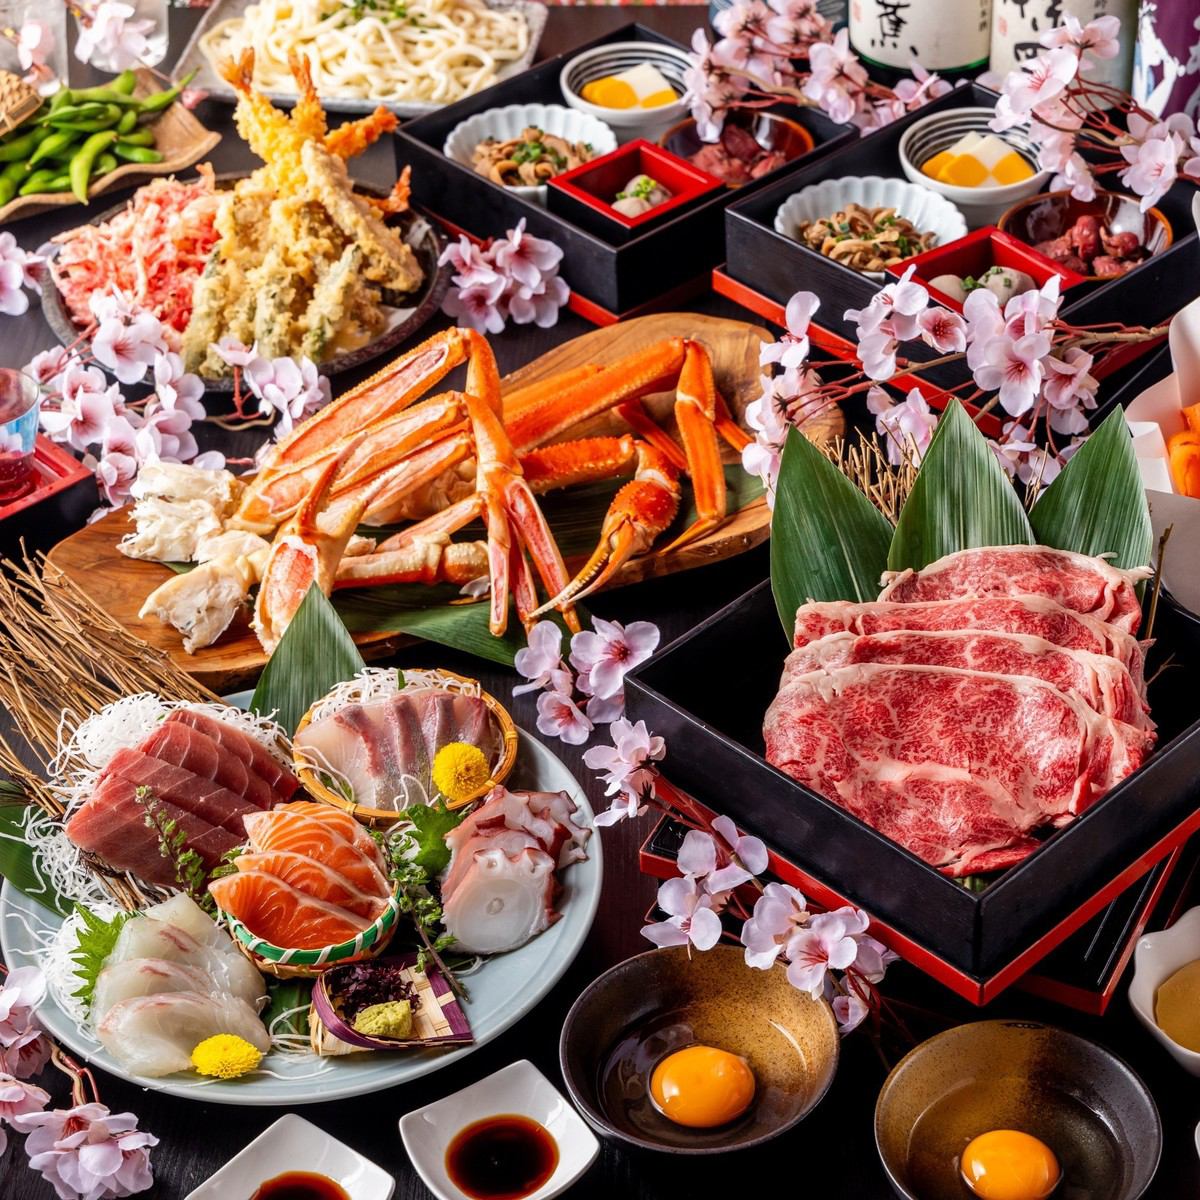 Suki-shabu "SUKISHABU" course [Marbled Japanese beef sukiyaki-style shabu-shabu & grilled eel...luxurious!] 11 dishes in total 10,000 yen ≪Recommended for entertainment, farewell parties, and tourists